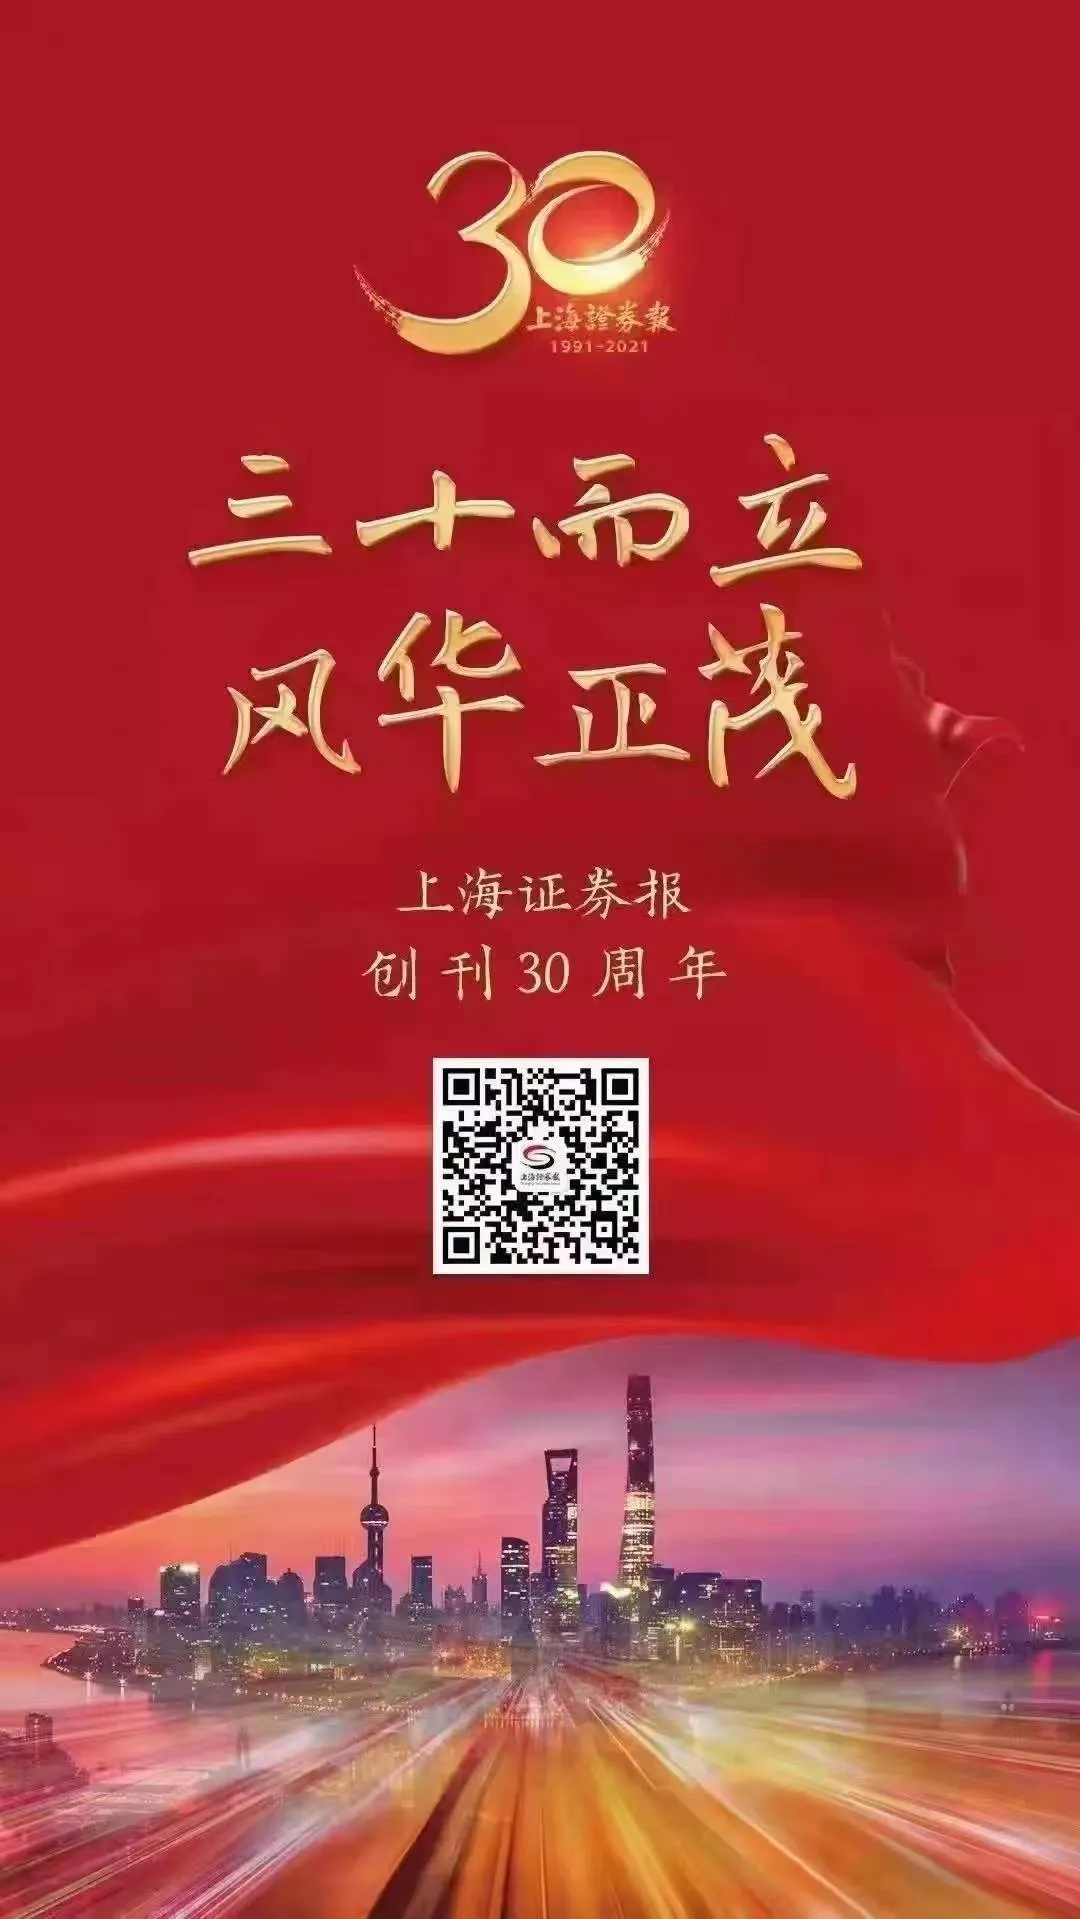 线上买球焦化股份有限公司热烈祝贺上海证券报创刊30周年